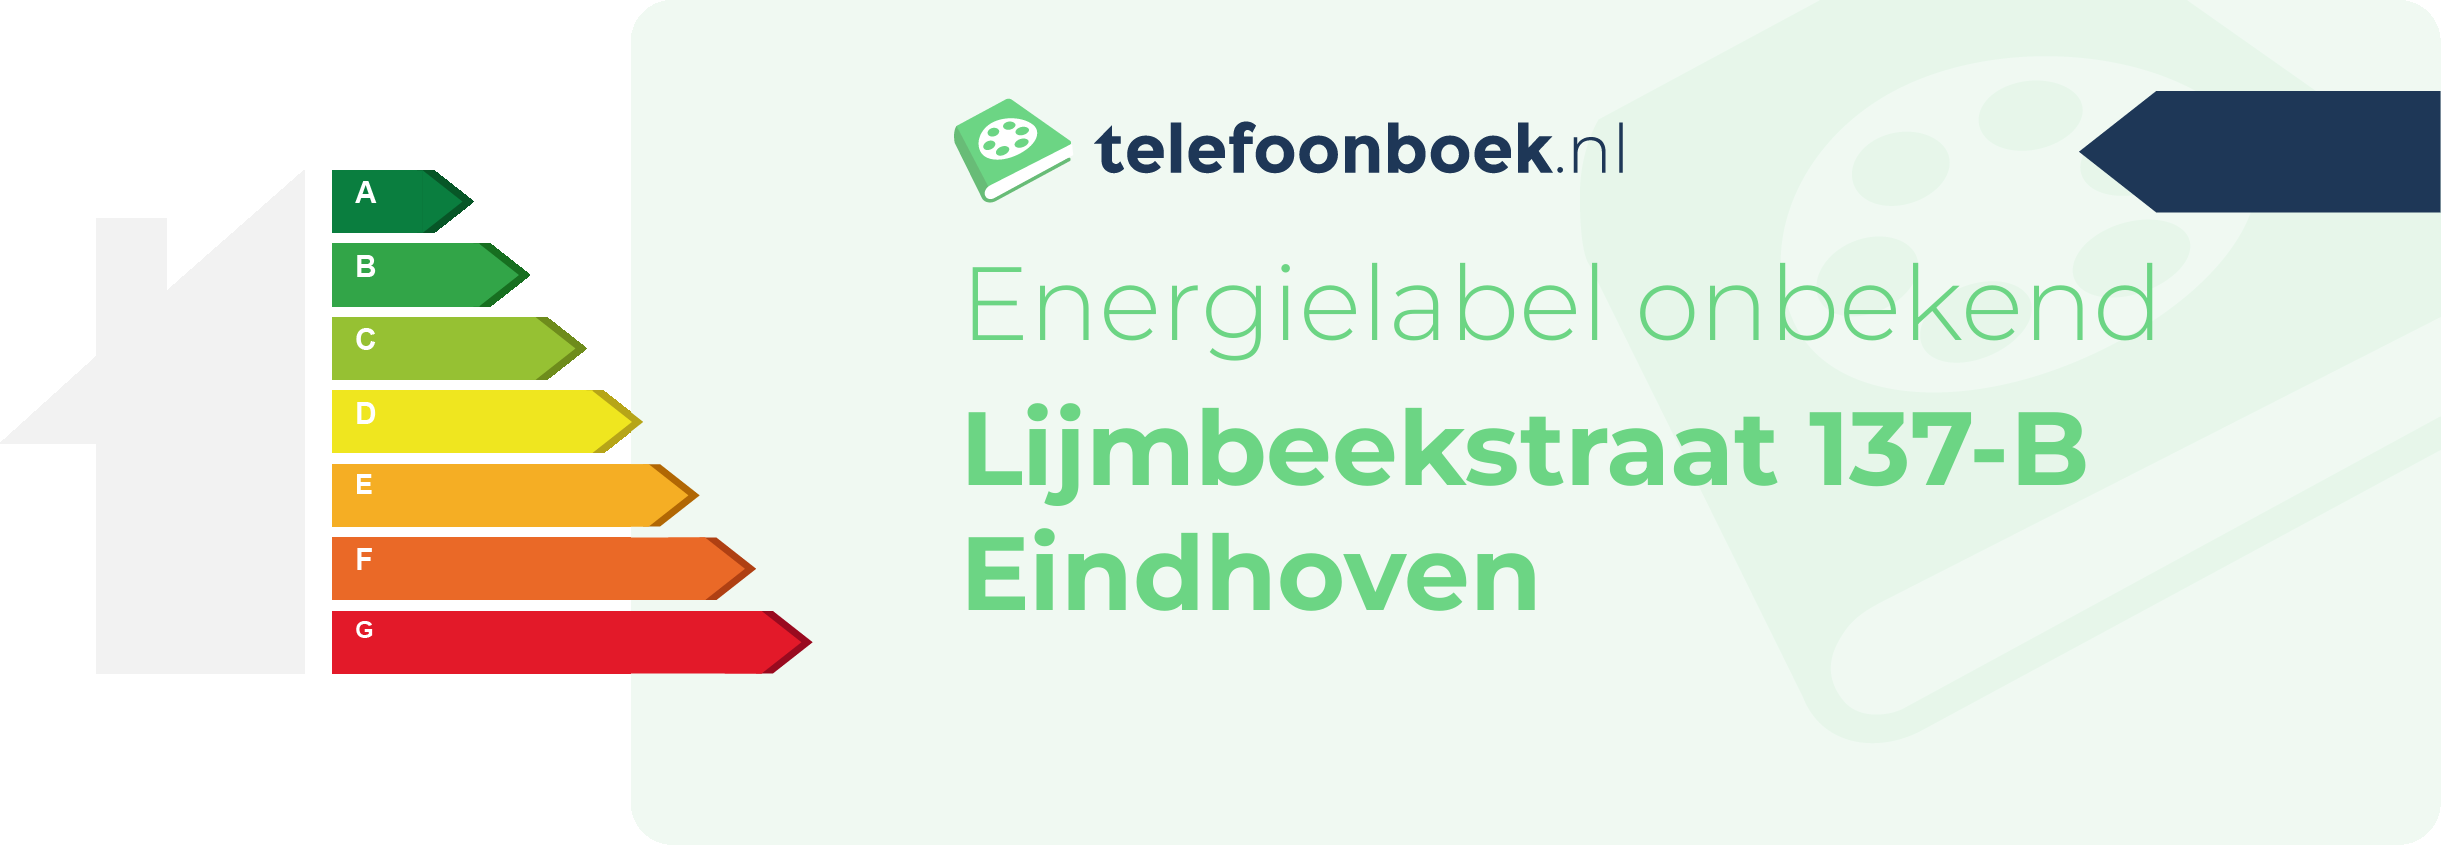 Energielabel Lijmbeekstraat 137-B Eindhoven